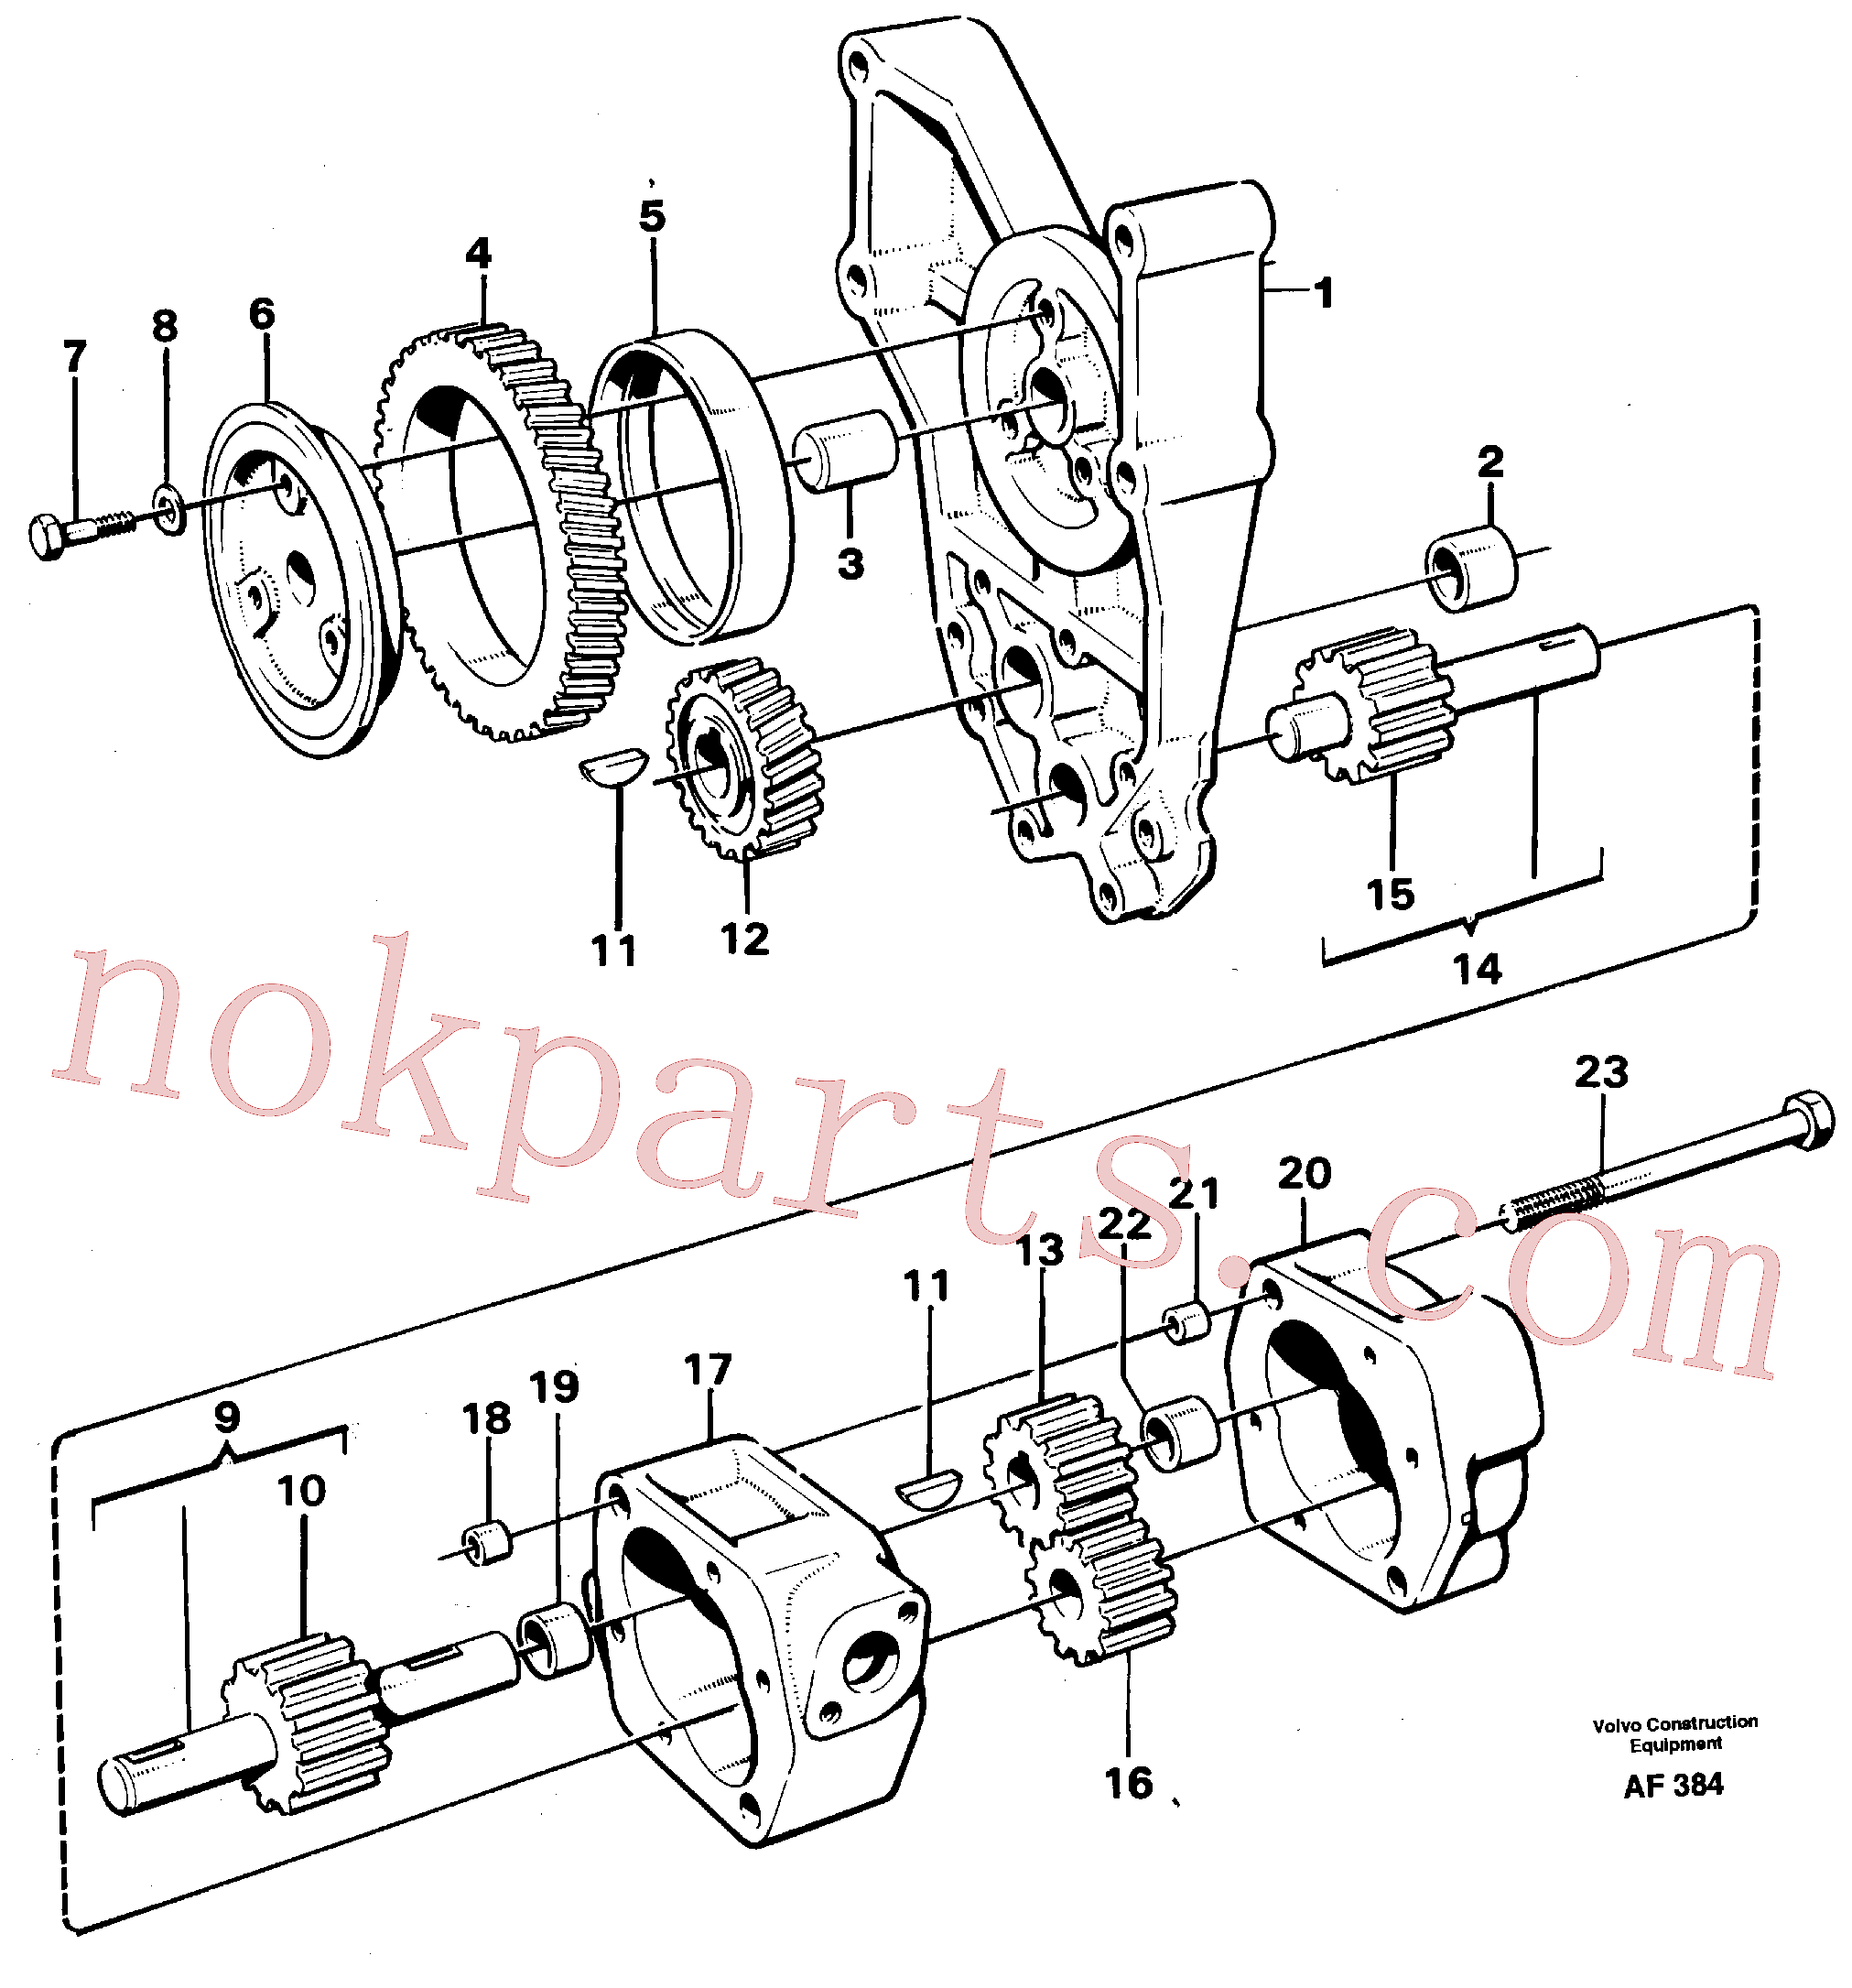 VOE191171 for Volvo Oil pump(AF384 assembly)